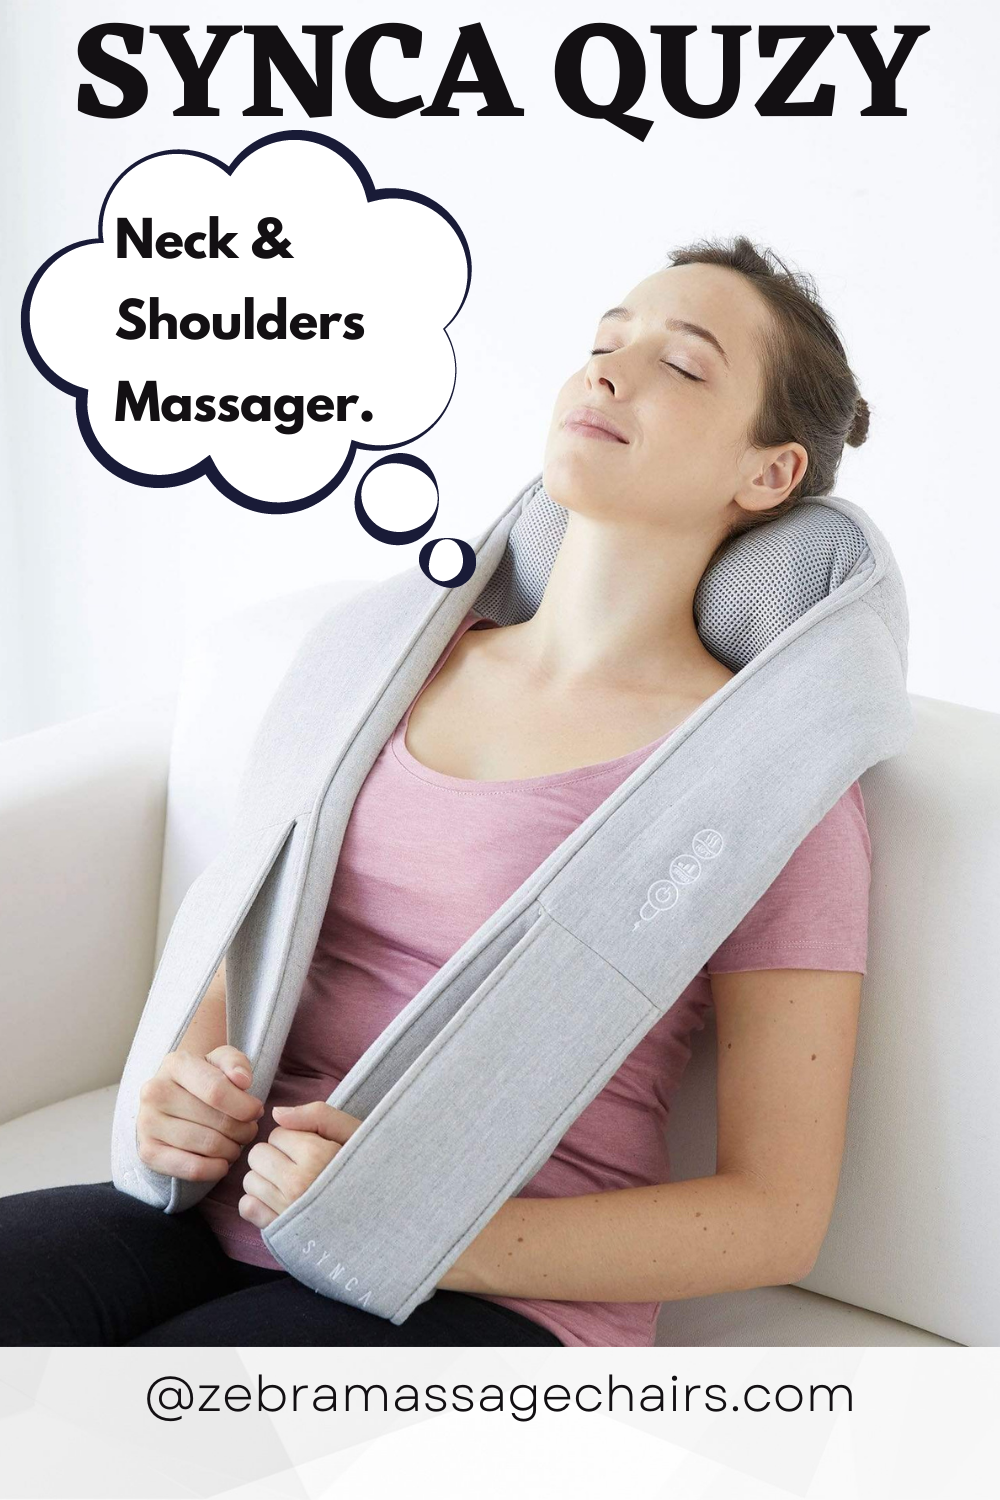 Neck Massager